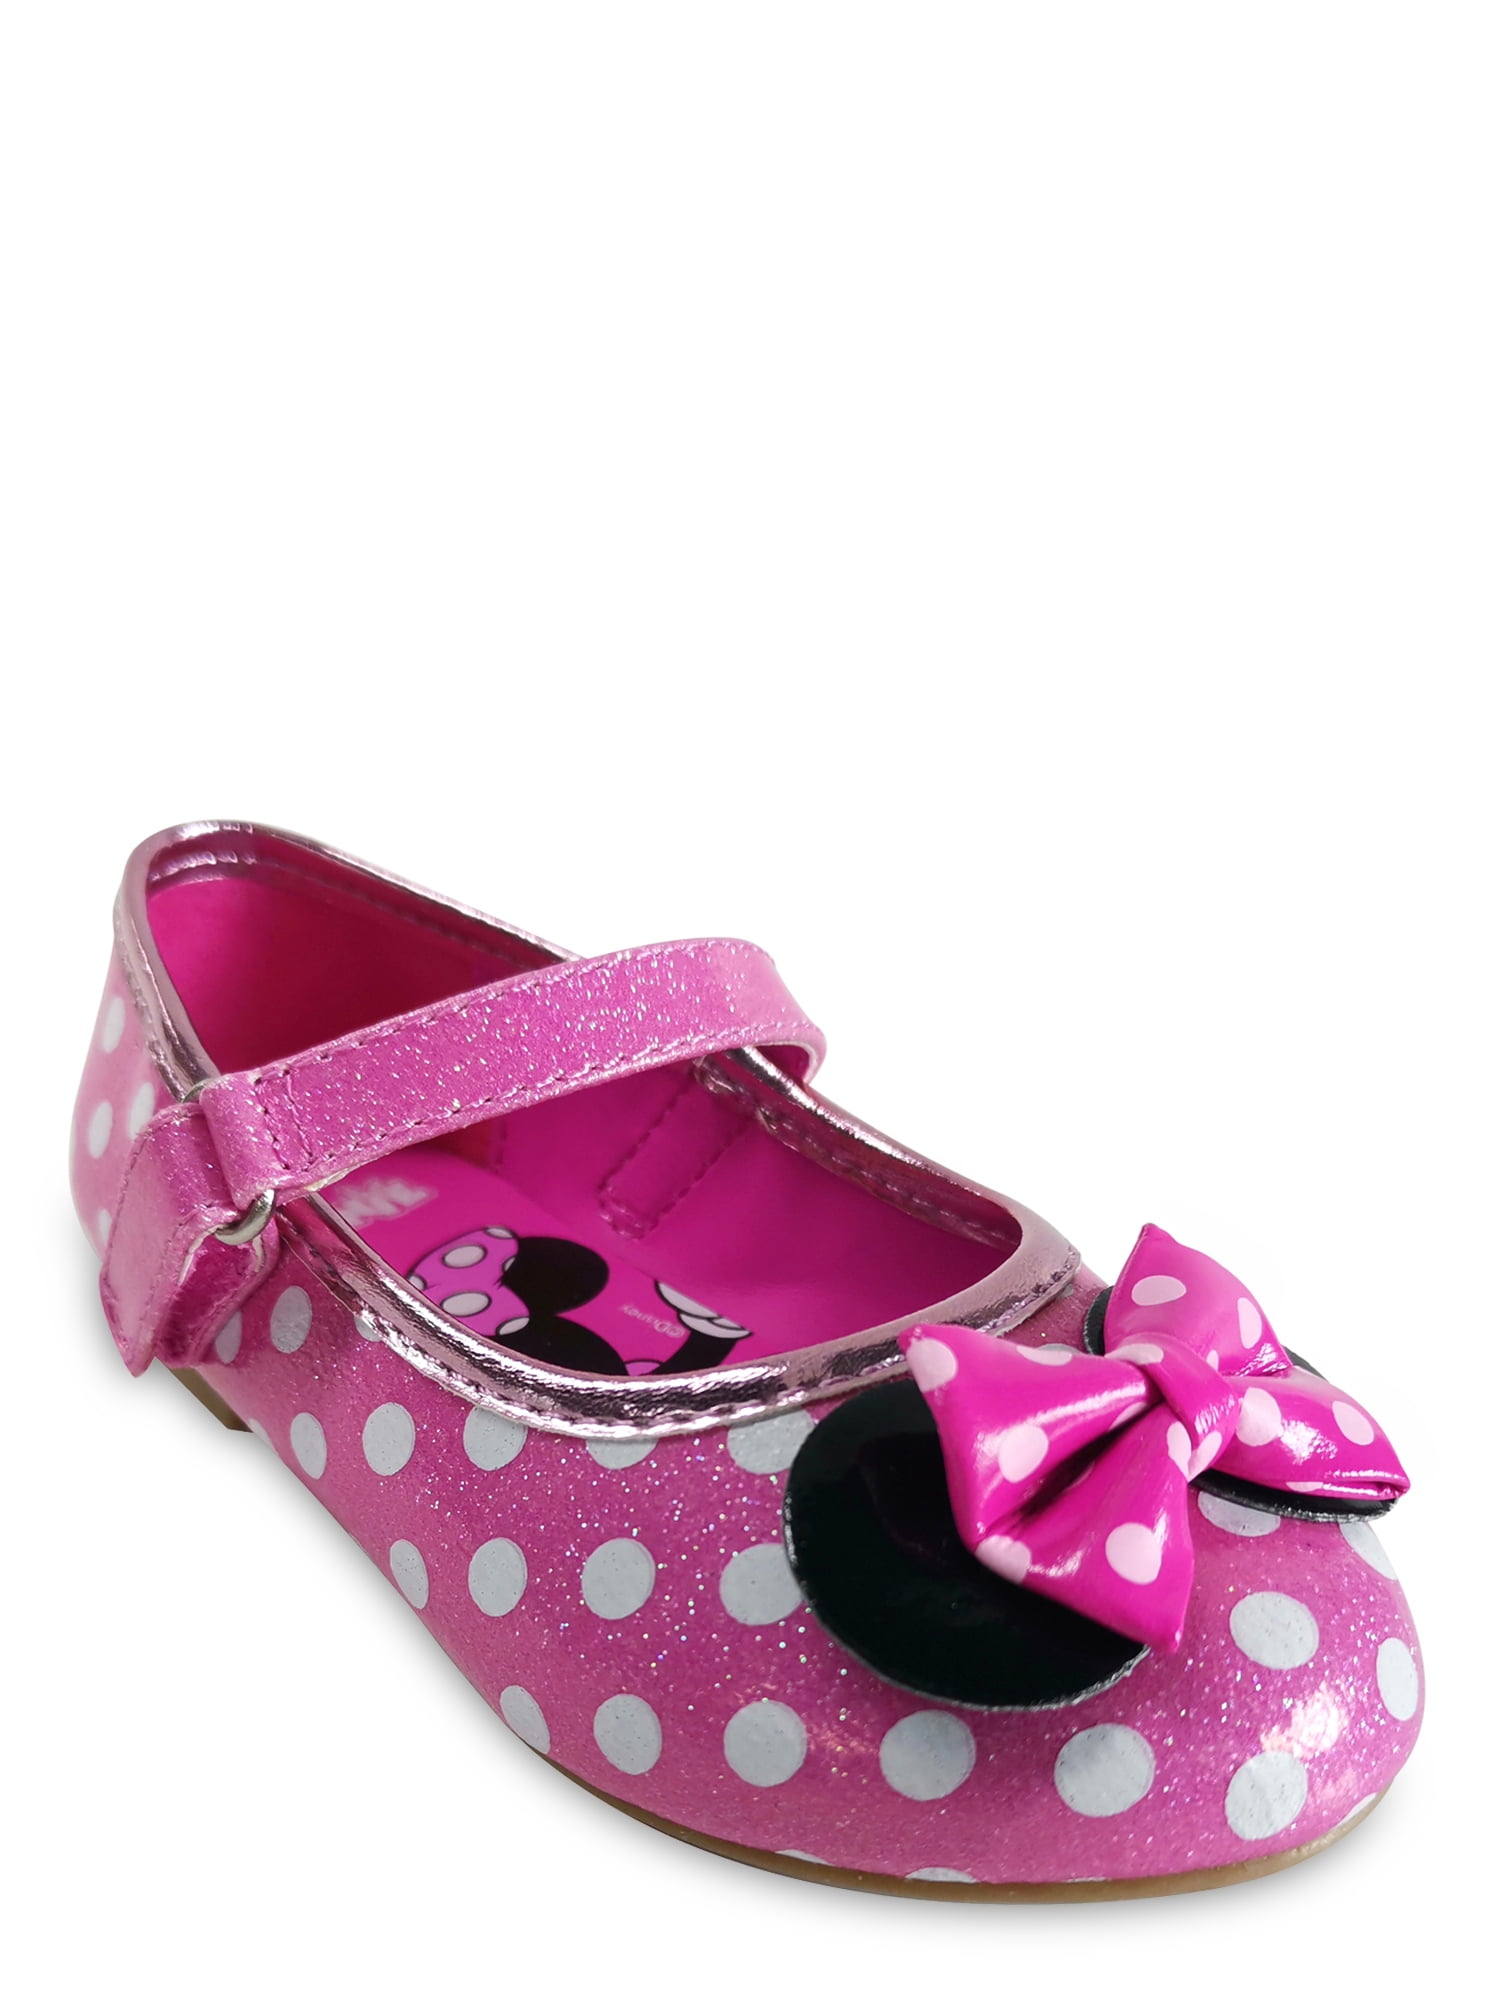 Disney Sandals for Women - Minnie Mouse Bow Sequin-Sh-alt279